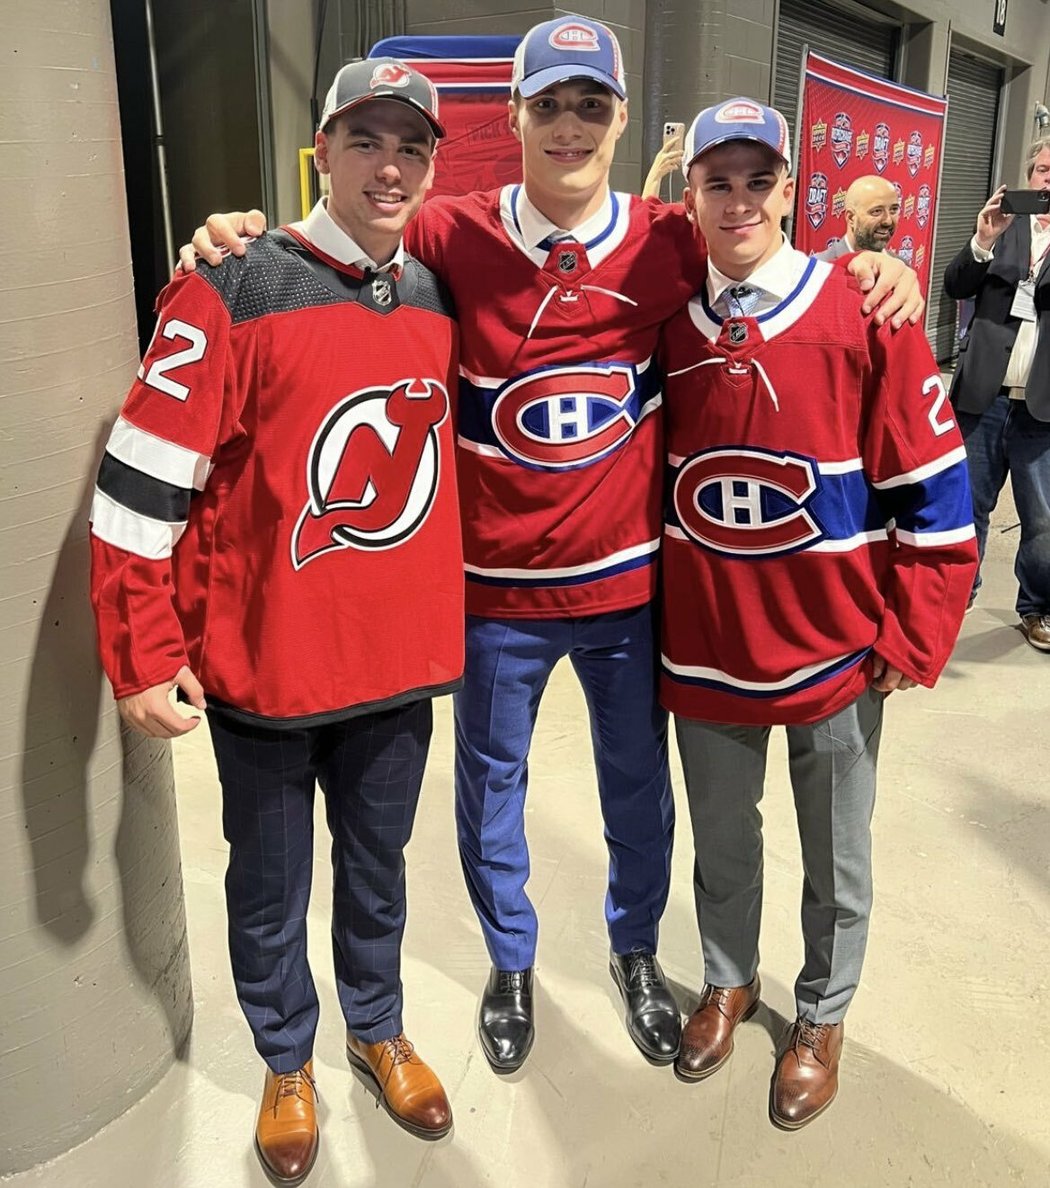 Úspěch slovenskému hokeji na draftu NHL 2022 zajistili (zleva) Šimon Nemec, Juraj Slafkovský a Filip Mešár. Všichni tři byli draftovaní v 1. kole